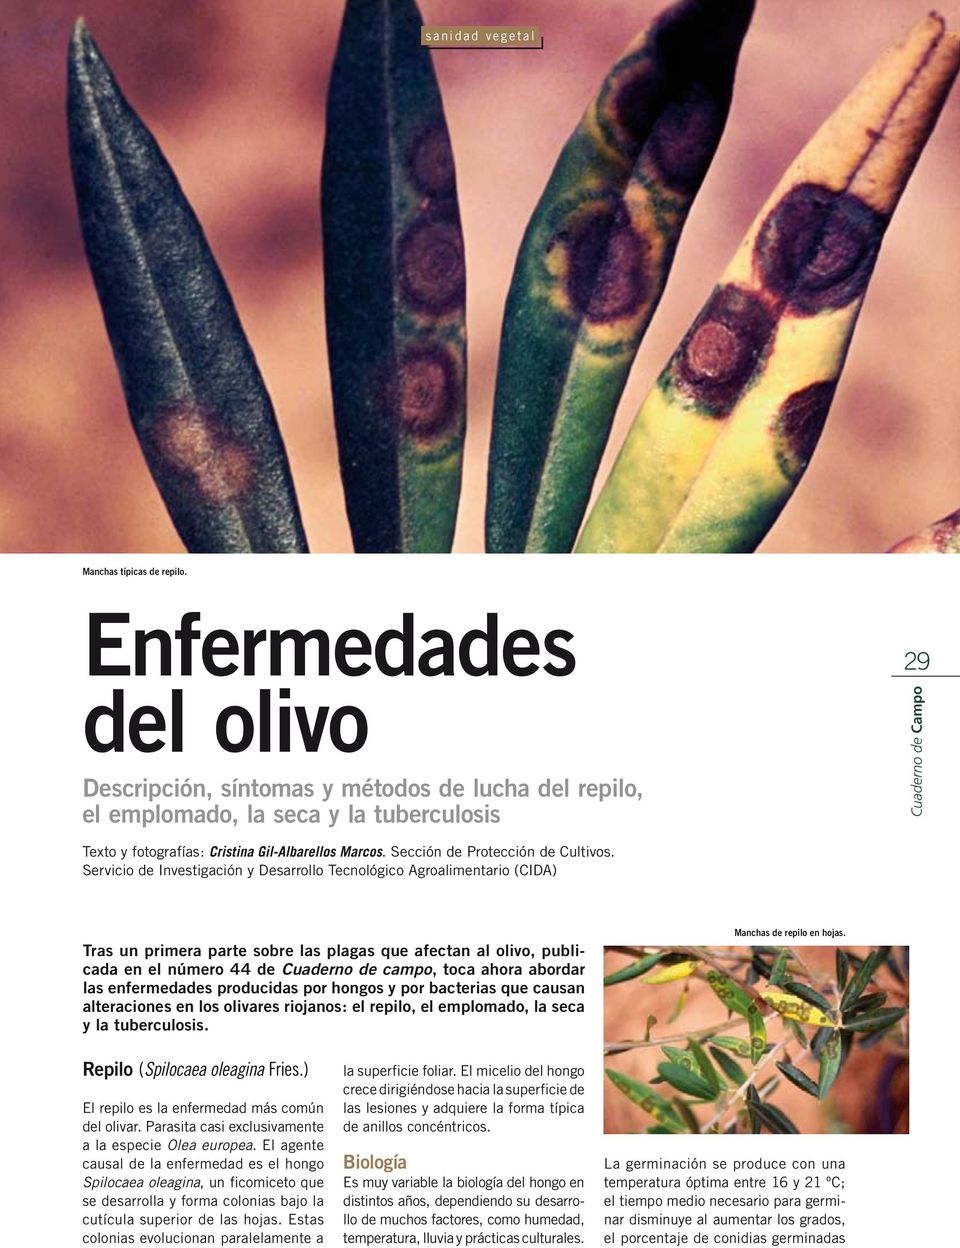 Servicio de Investigación y Desarrollo Tecnológico Agroalimentario (CIDA) Tras un primera parte sobre las plagas que afectan al olivo, publicada en el número 44 de Cuaderno de campo, toca ahora